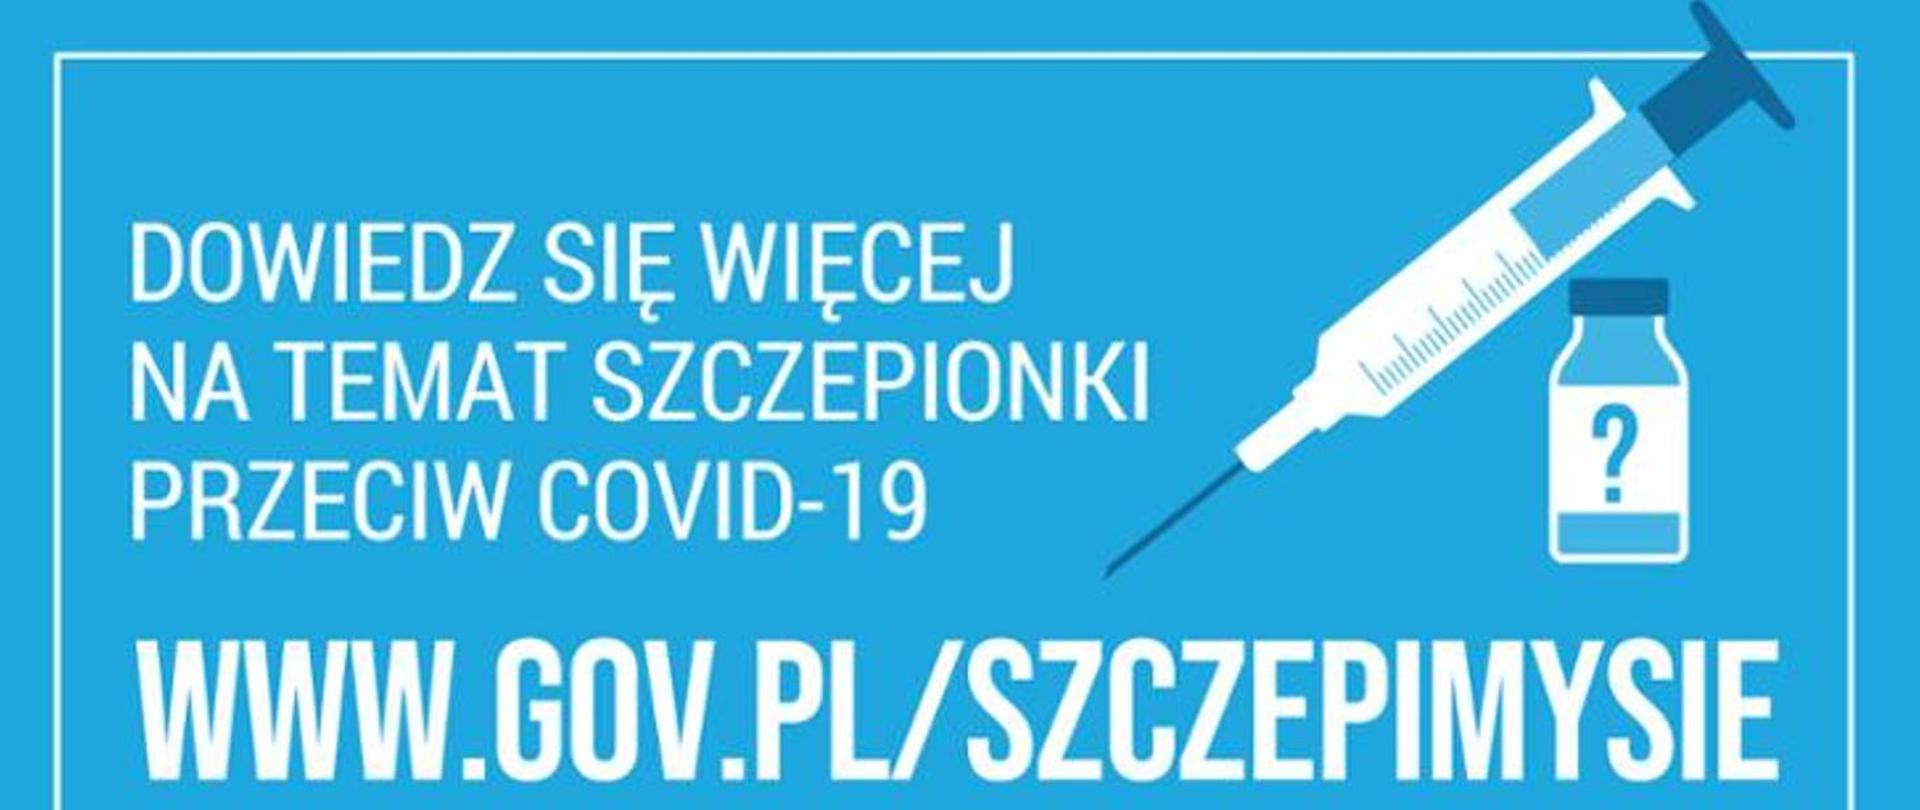 rycina przedstawia: dowiedz sie więcej na temat szczepionki przeciw covid 19 www.gov.pl/szczepimy sie